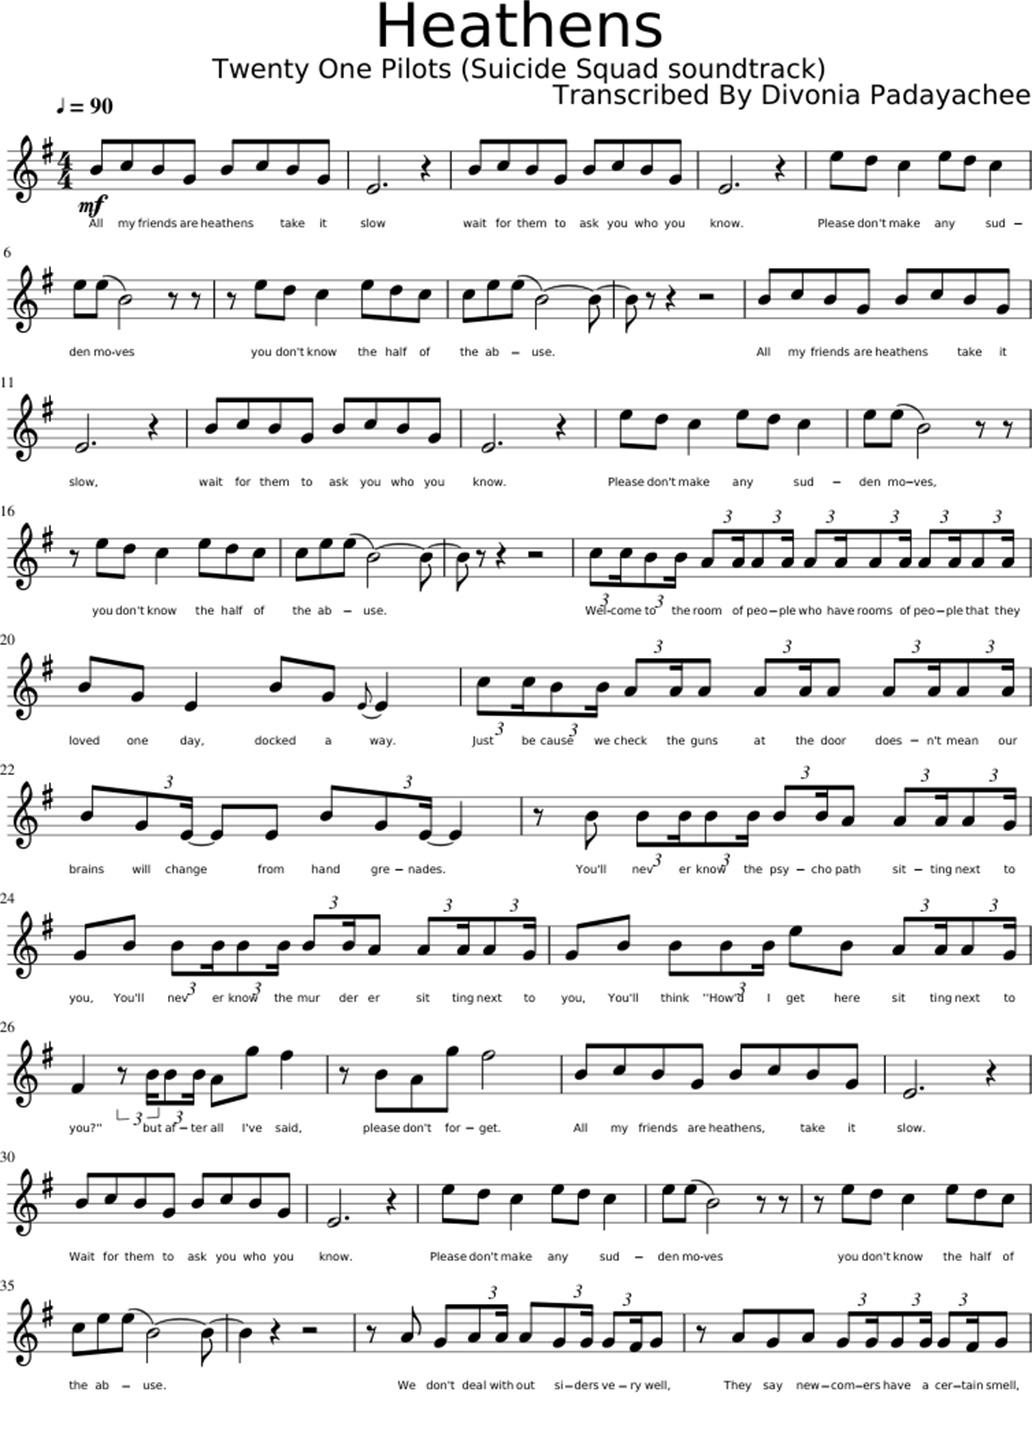 Heathens sheet music notes 1